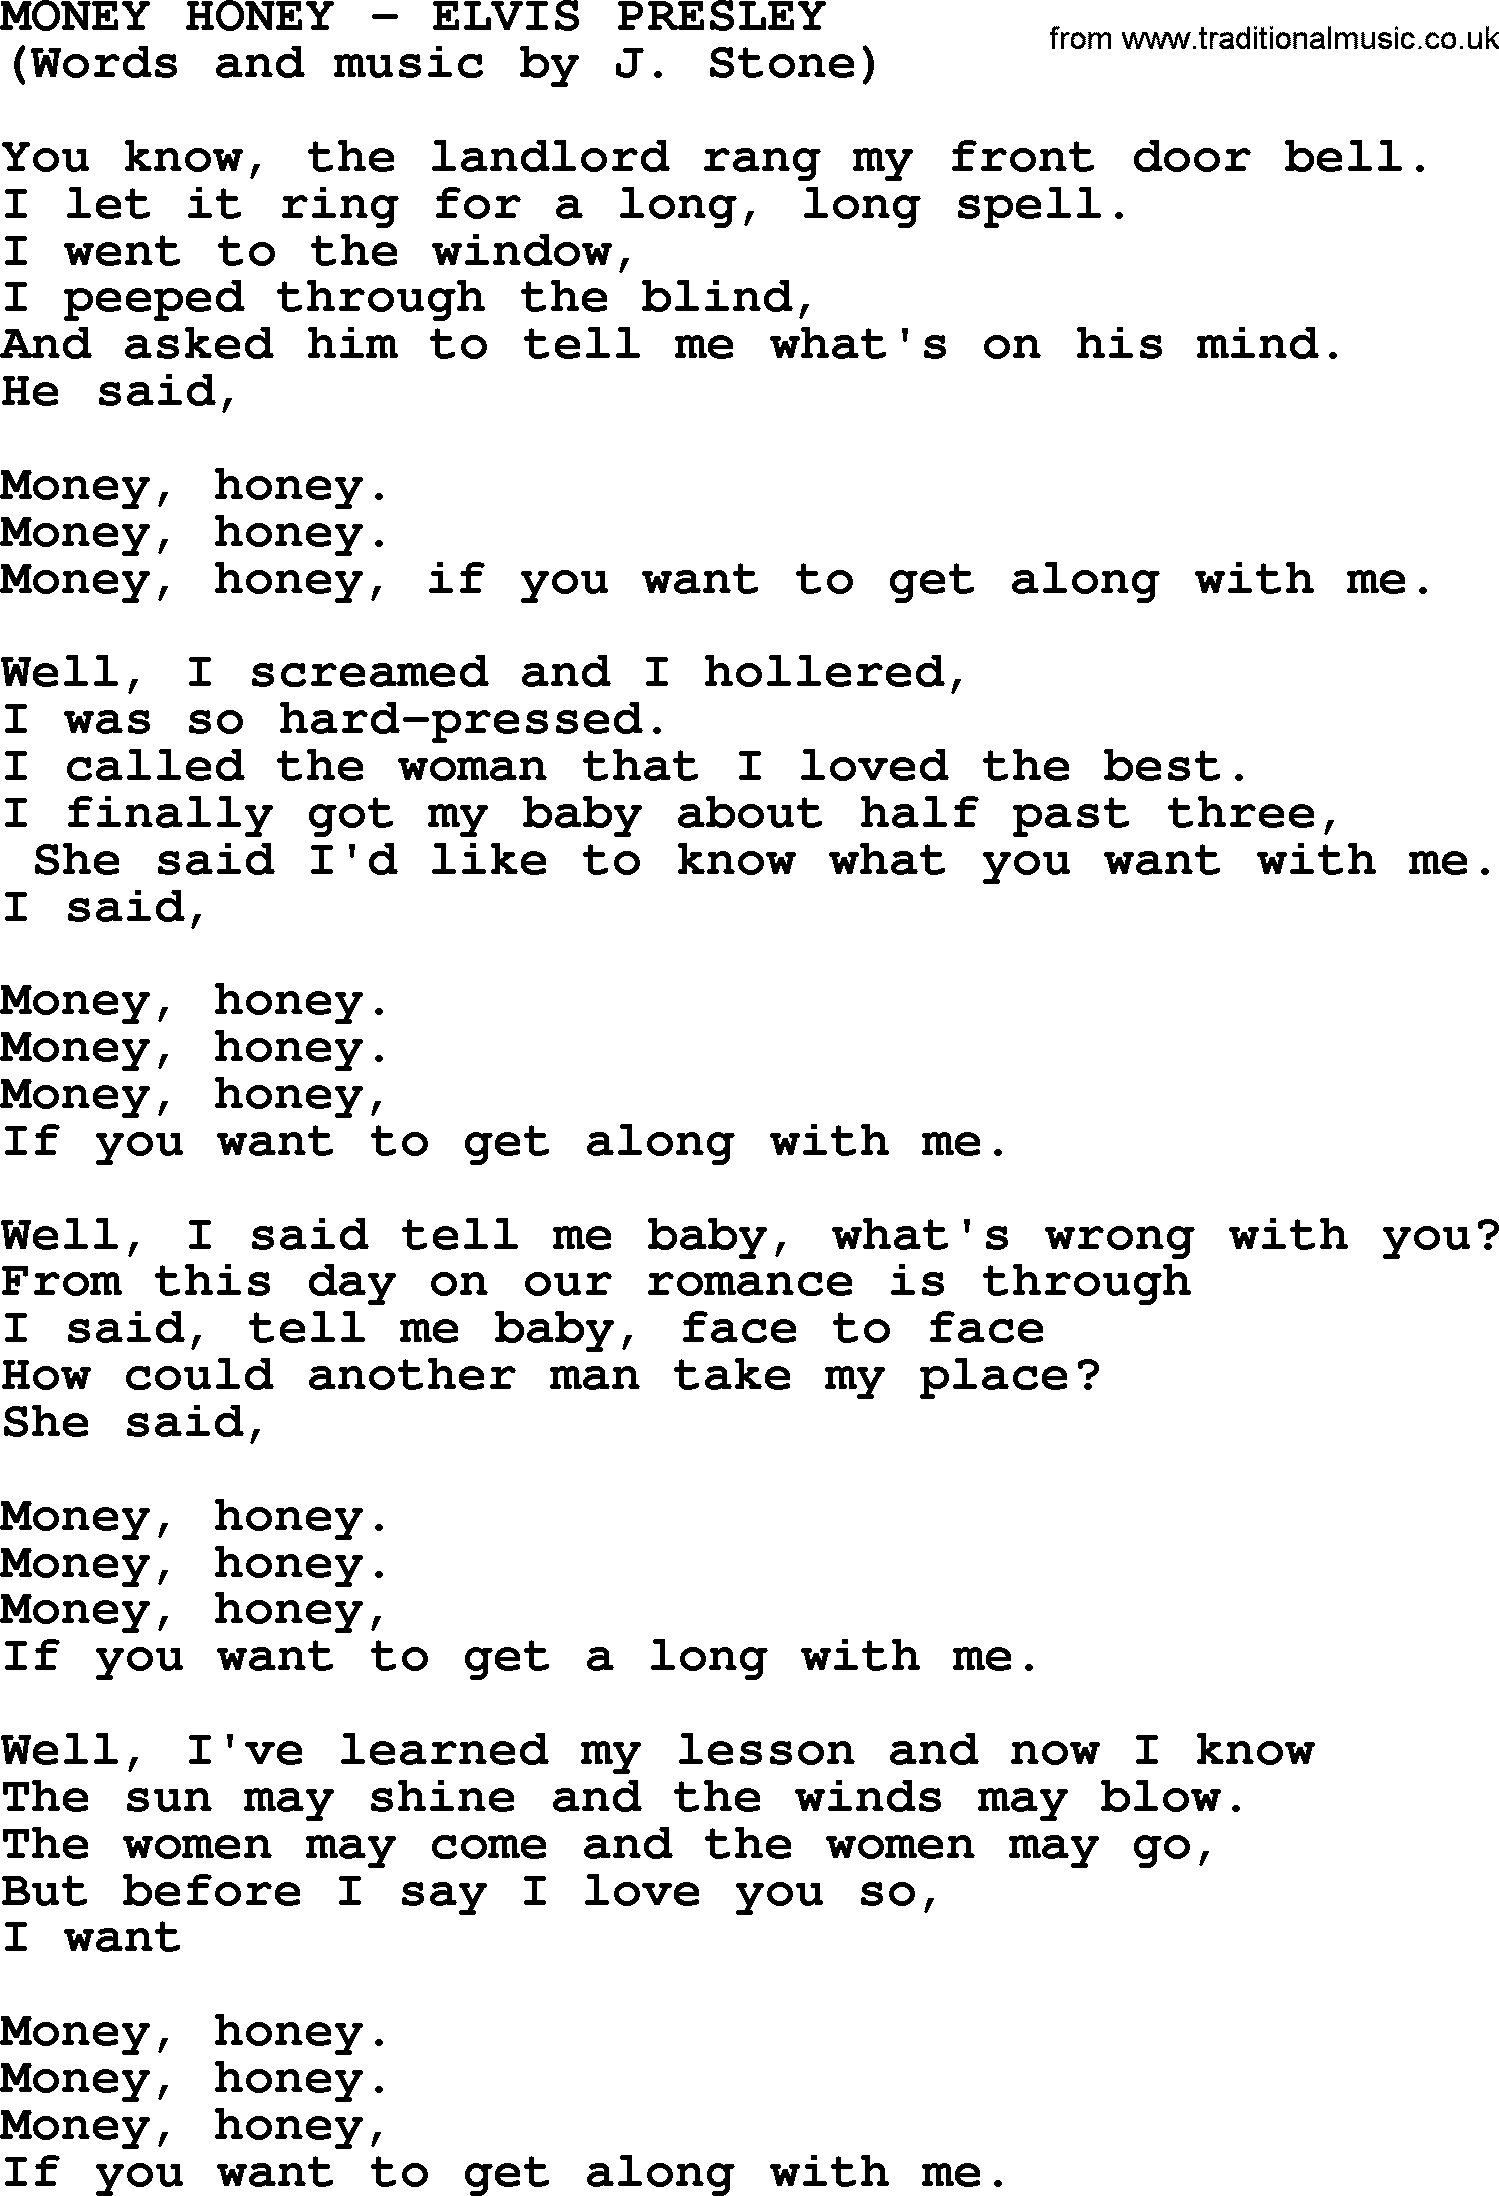 Elvis Presley song: Money Honey lyrics